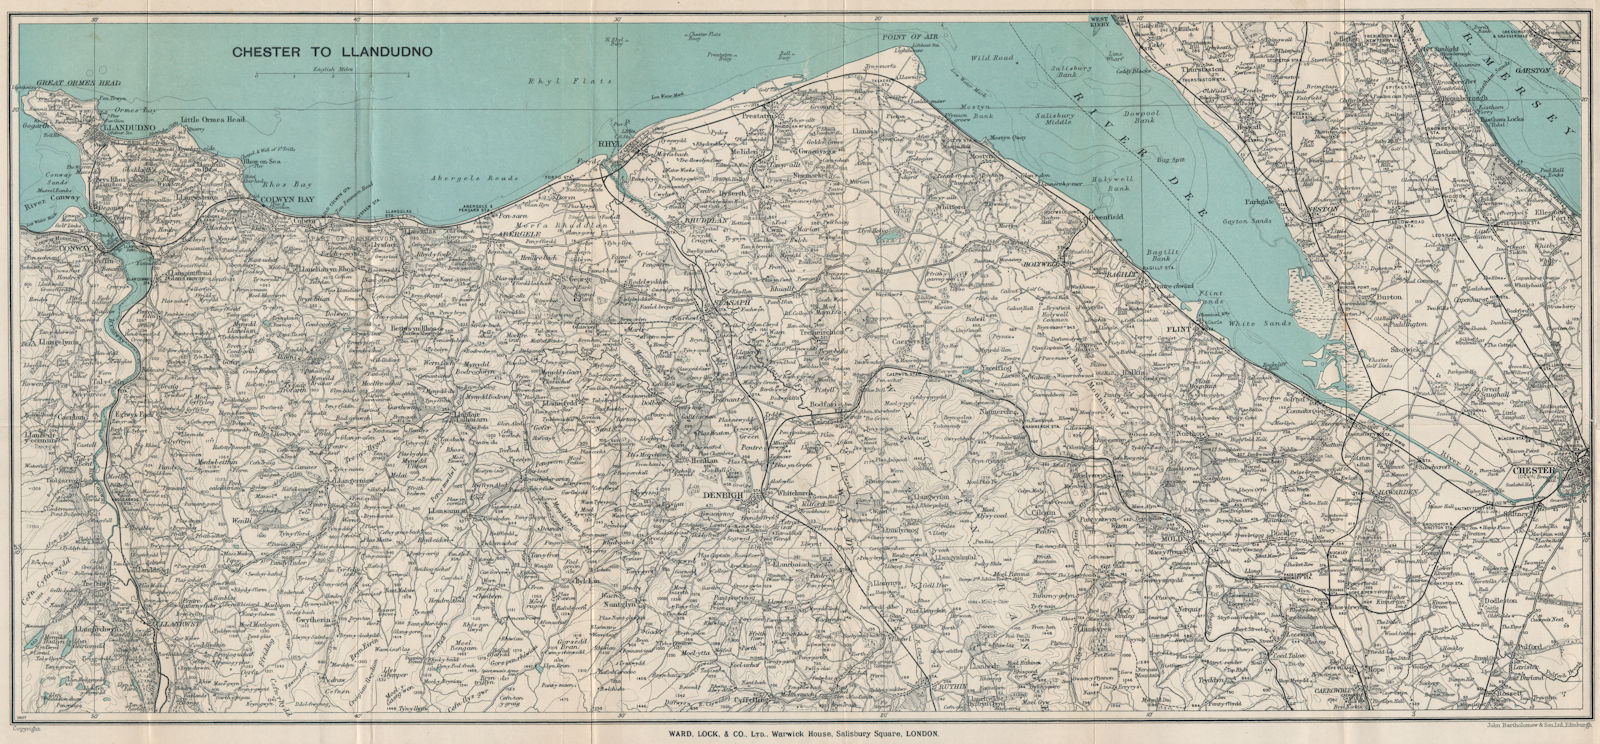 NORTH WALES COAST. Chester-Llandudno. Denbigh Rhyl Deeside. WARD LOCK 1930 map